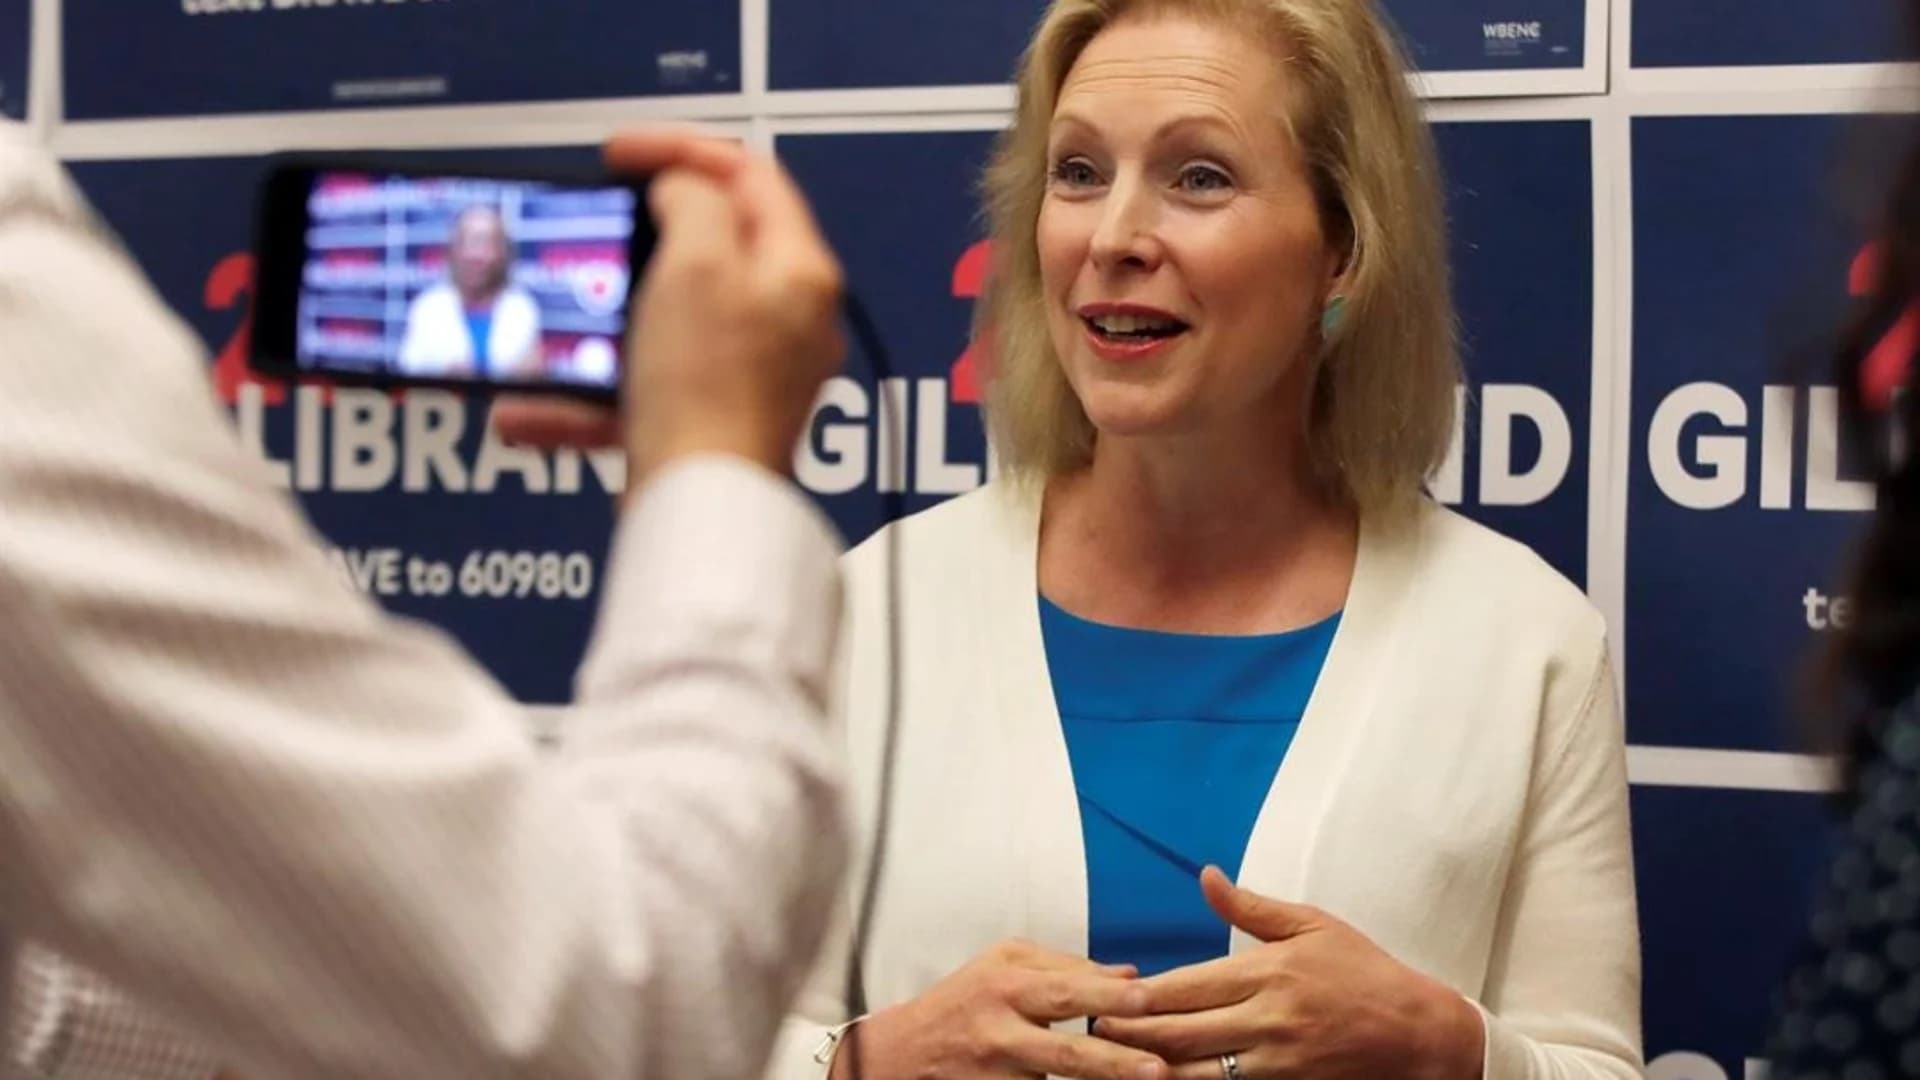 Sen. Gillibrand says she's ending 2020 presidential bid